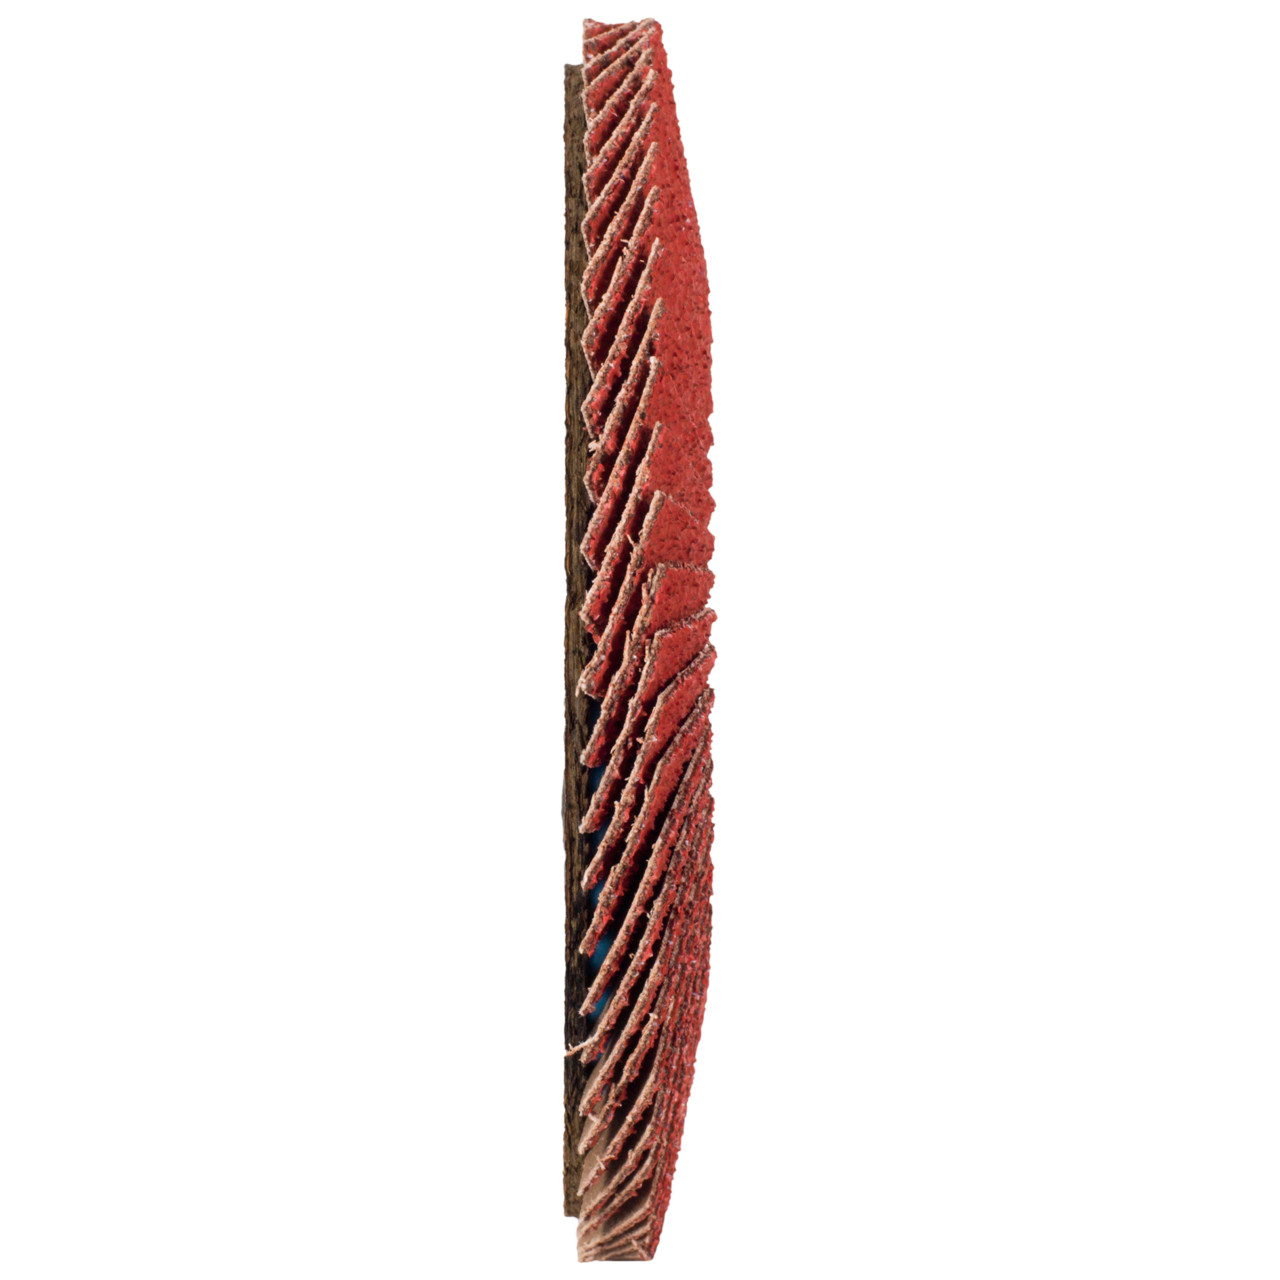 Tyrolit Rondelle éventail DxH 115x22,23 CERABOND Rondelle éventail pour acier inoxydable, P60, forme : 28A - modèle droit (modèle à corps en fibre de verre), Art. 34166173